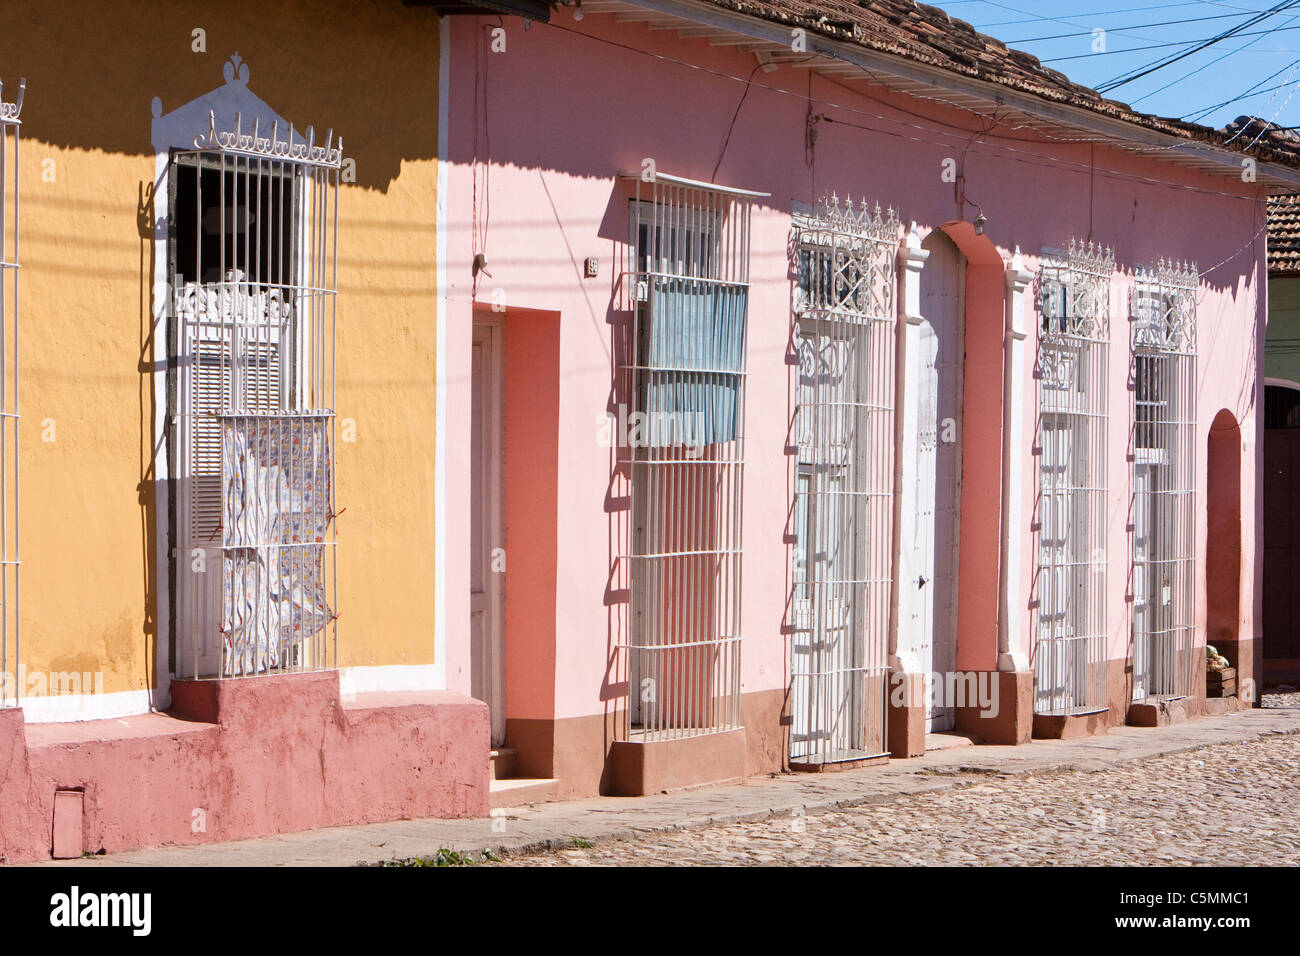 Cuba, Trinidad. Maisons aux grilles de protection sur les portes et fenêtres. Banque D'Images